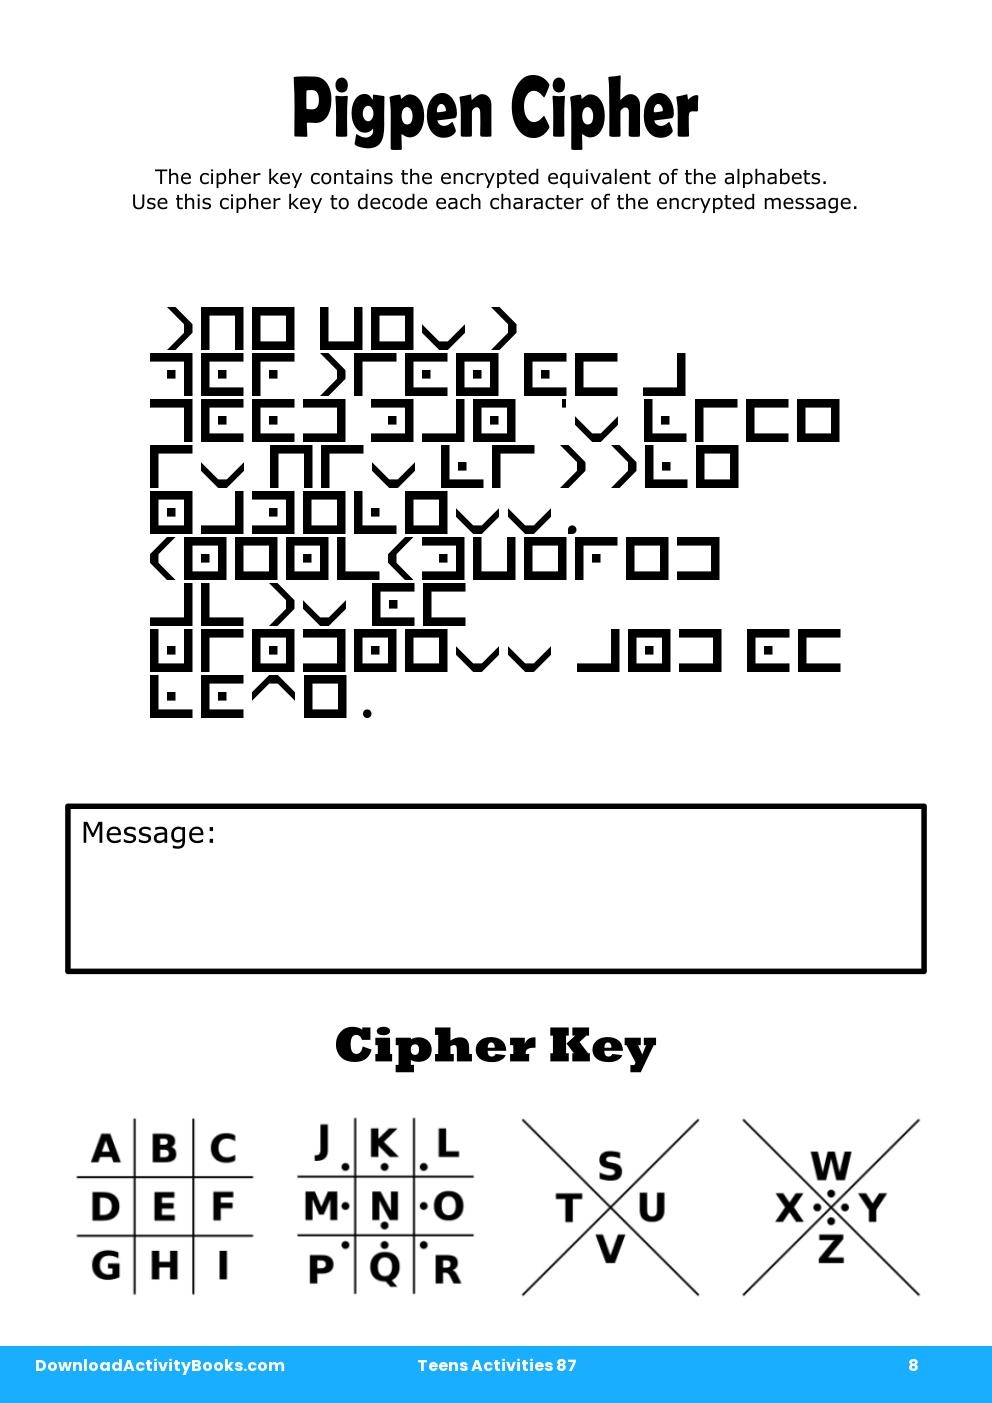 Pigpen Cipher in Teens Activities 87